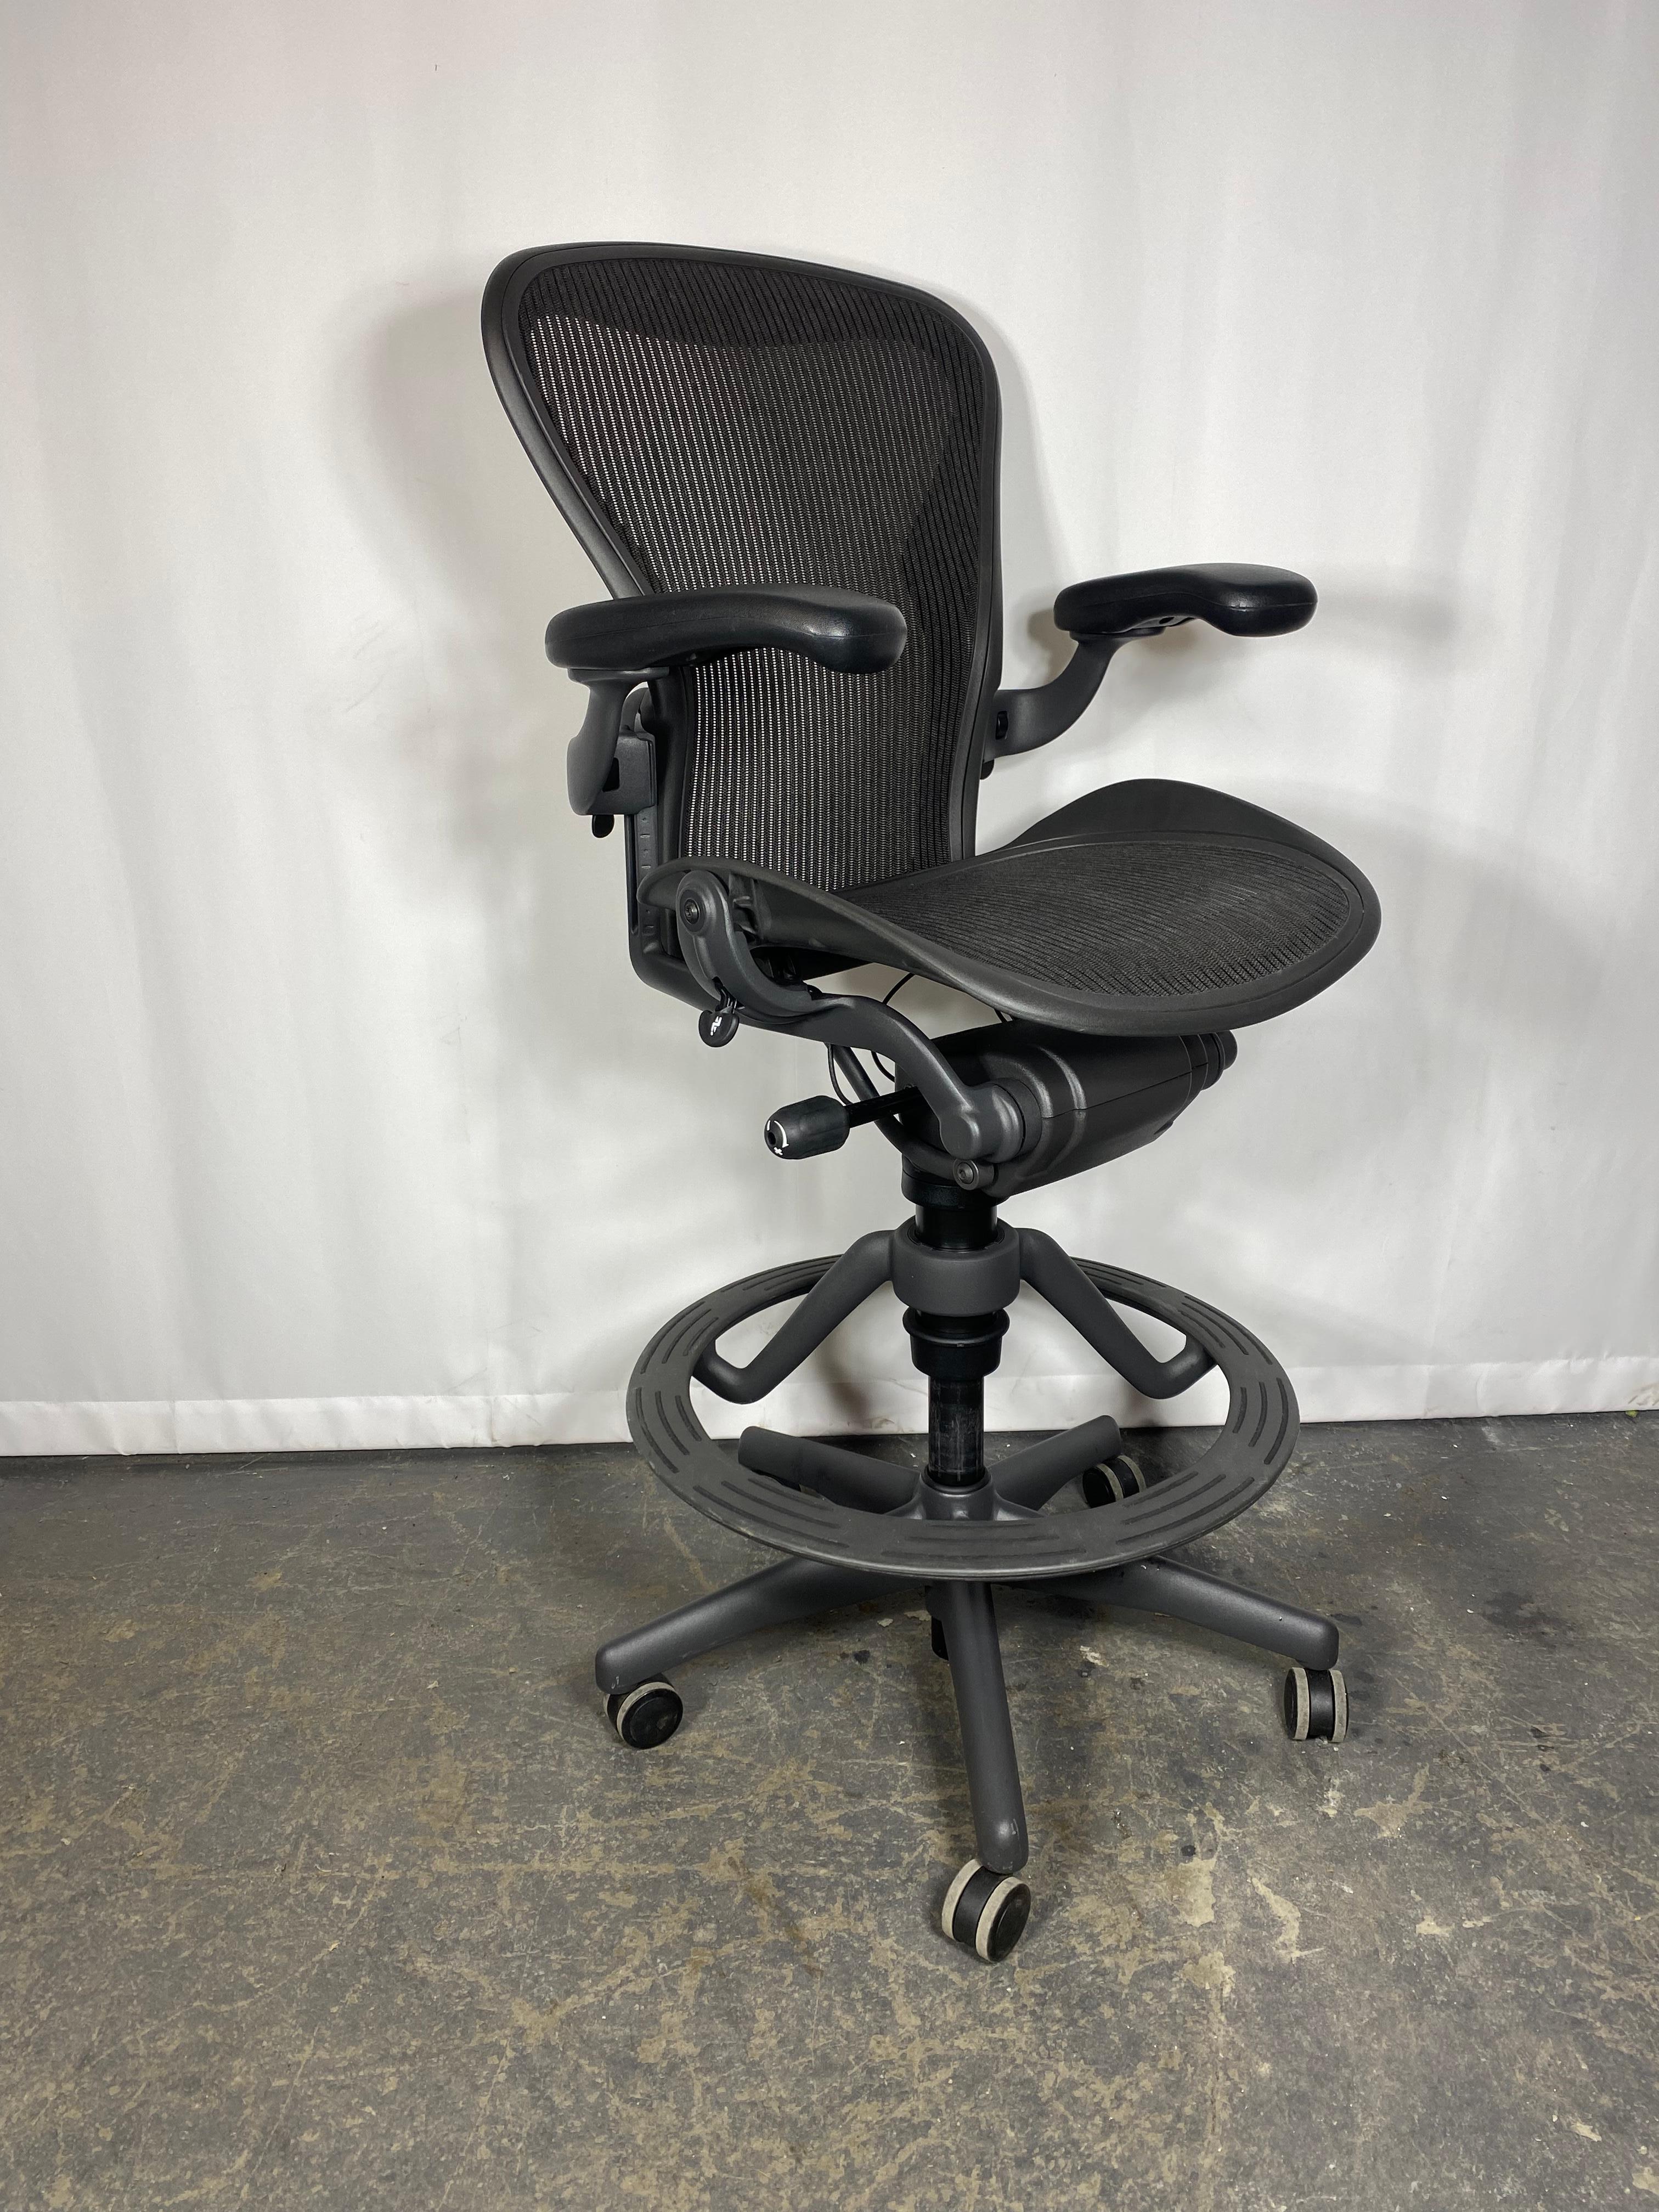 Les chaises Aeron sont des affirmations de pointe en matière d'élégance et de conception ergonomique, nées des esprits créatifs et exigeants d'Herman Miller. L'Aeron est à l'avant-garde du luxe et de la technologie de pointe. Largement utilisée dans